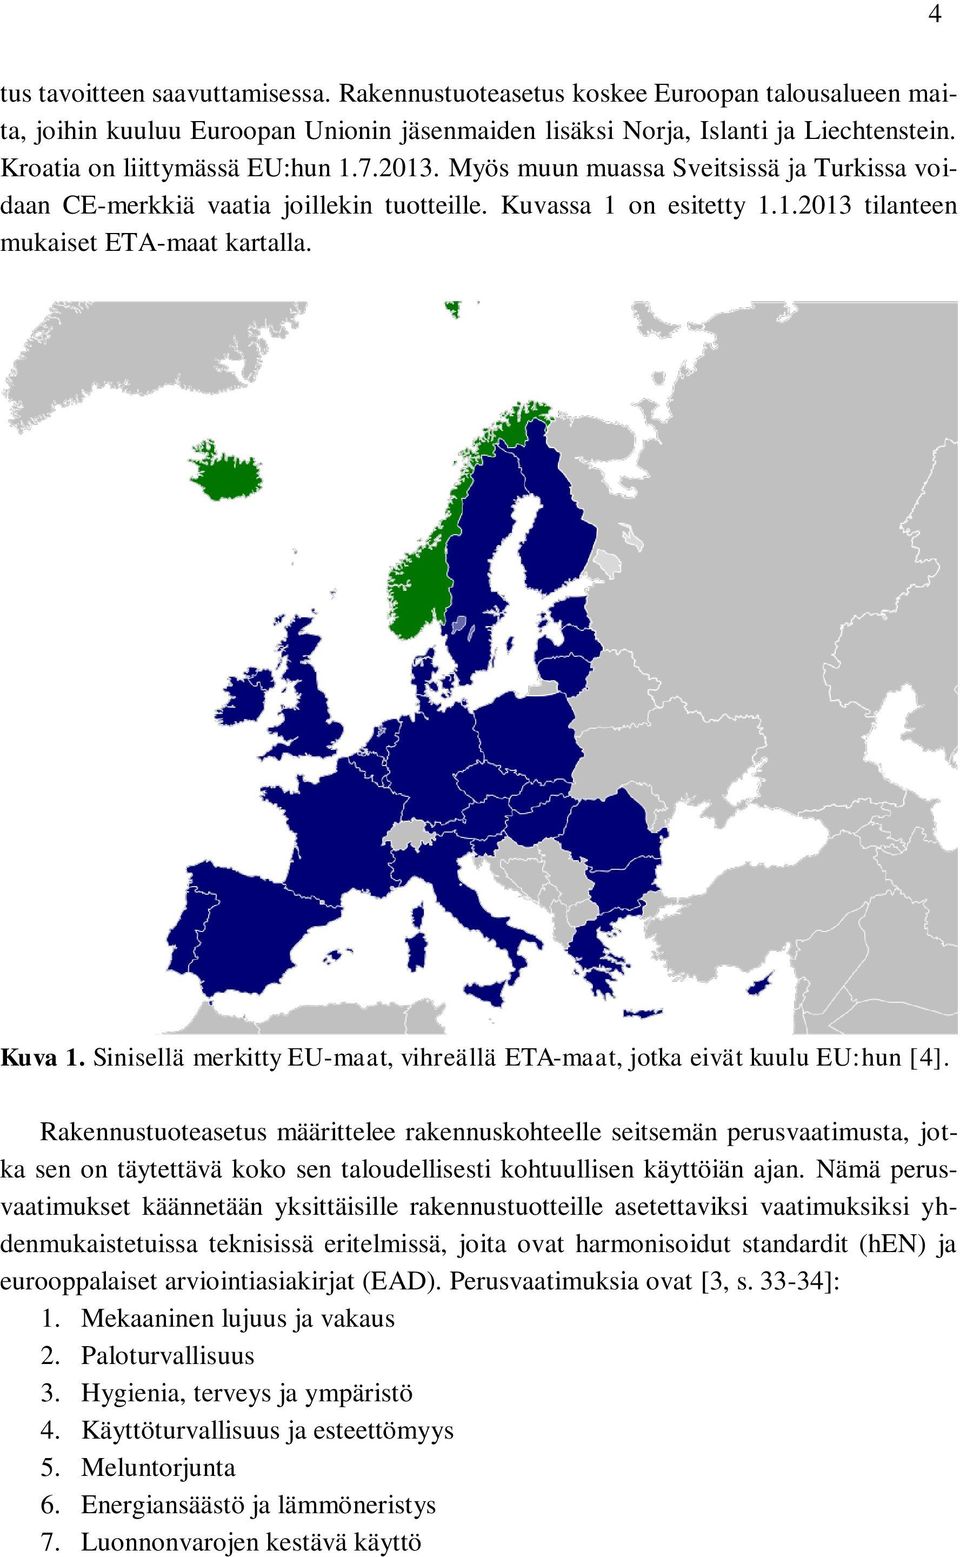 Kuva 1. Sinisellä merkitty EU-maat, vihreällä ETA-maat, jotka eivät kuulu EU:hun [4].